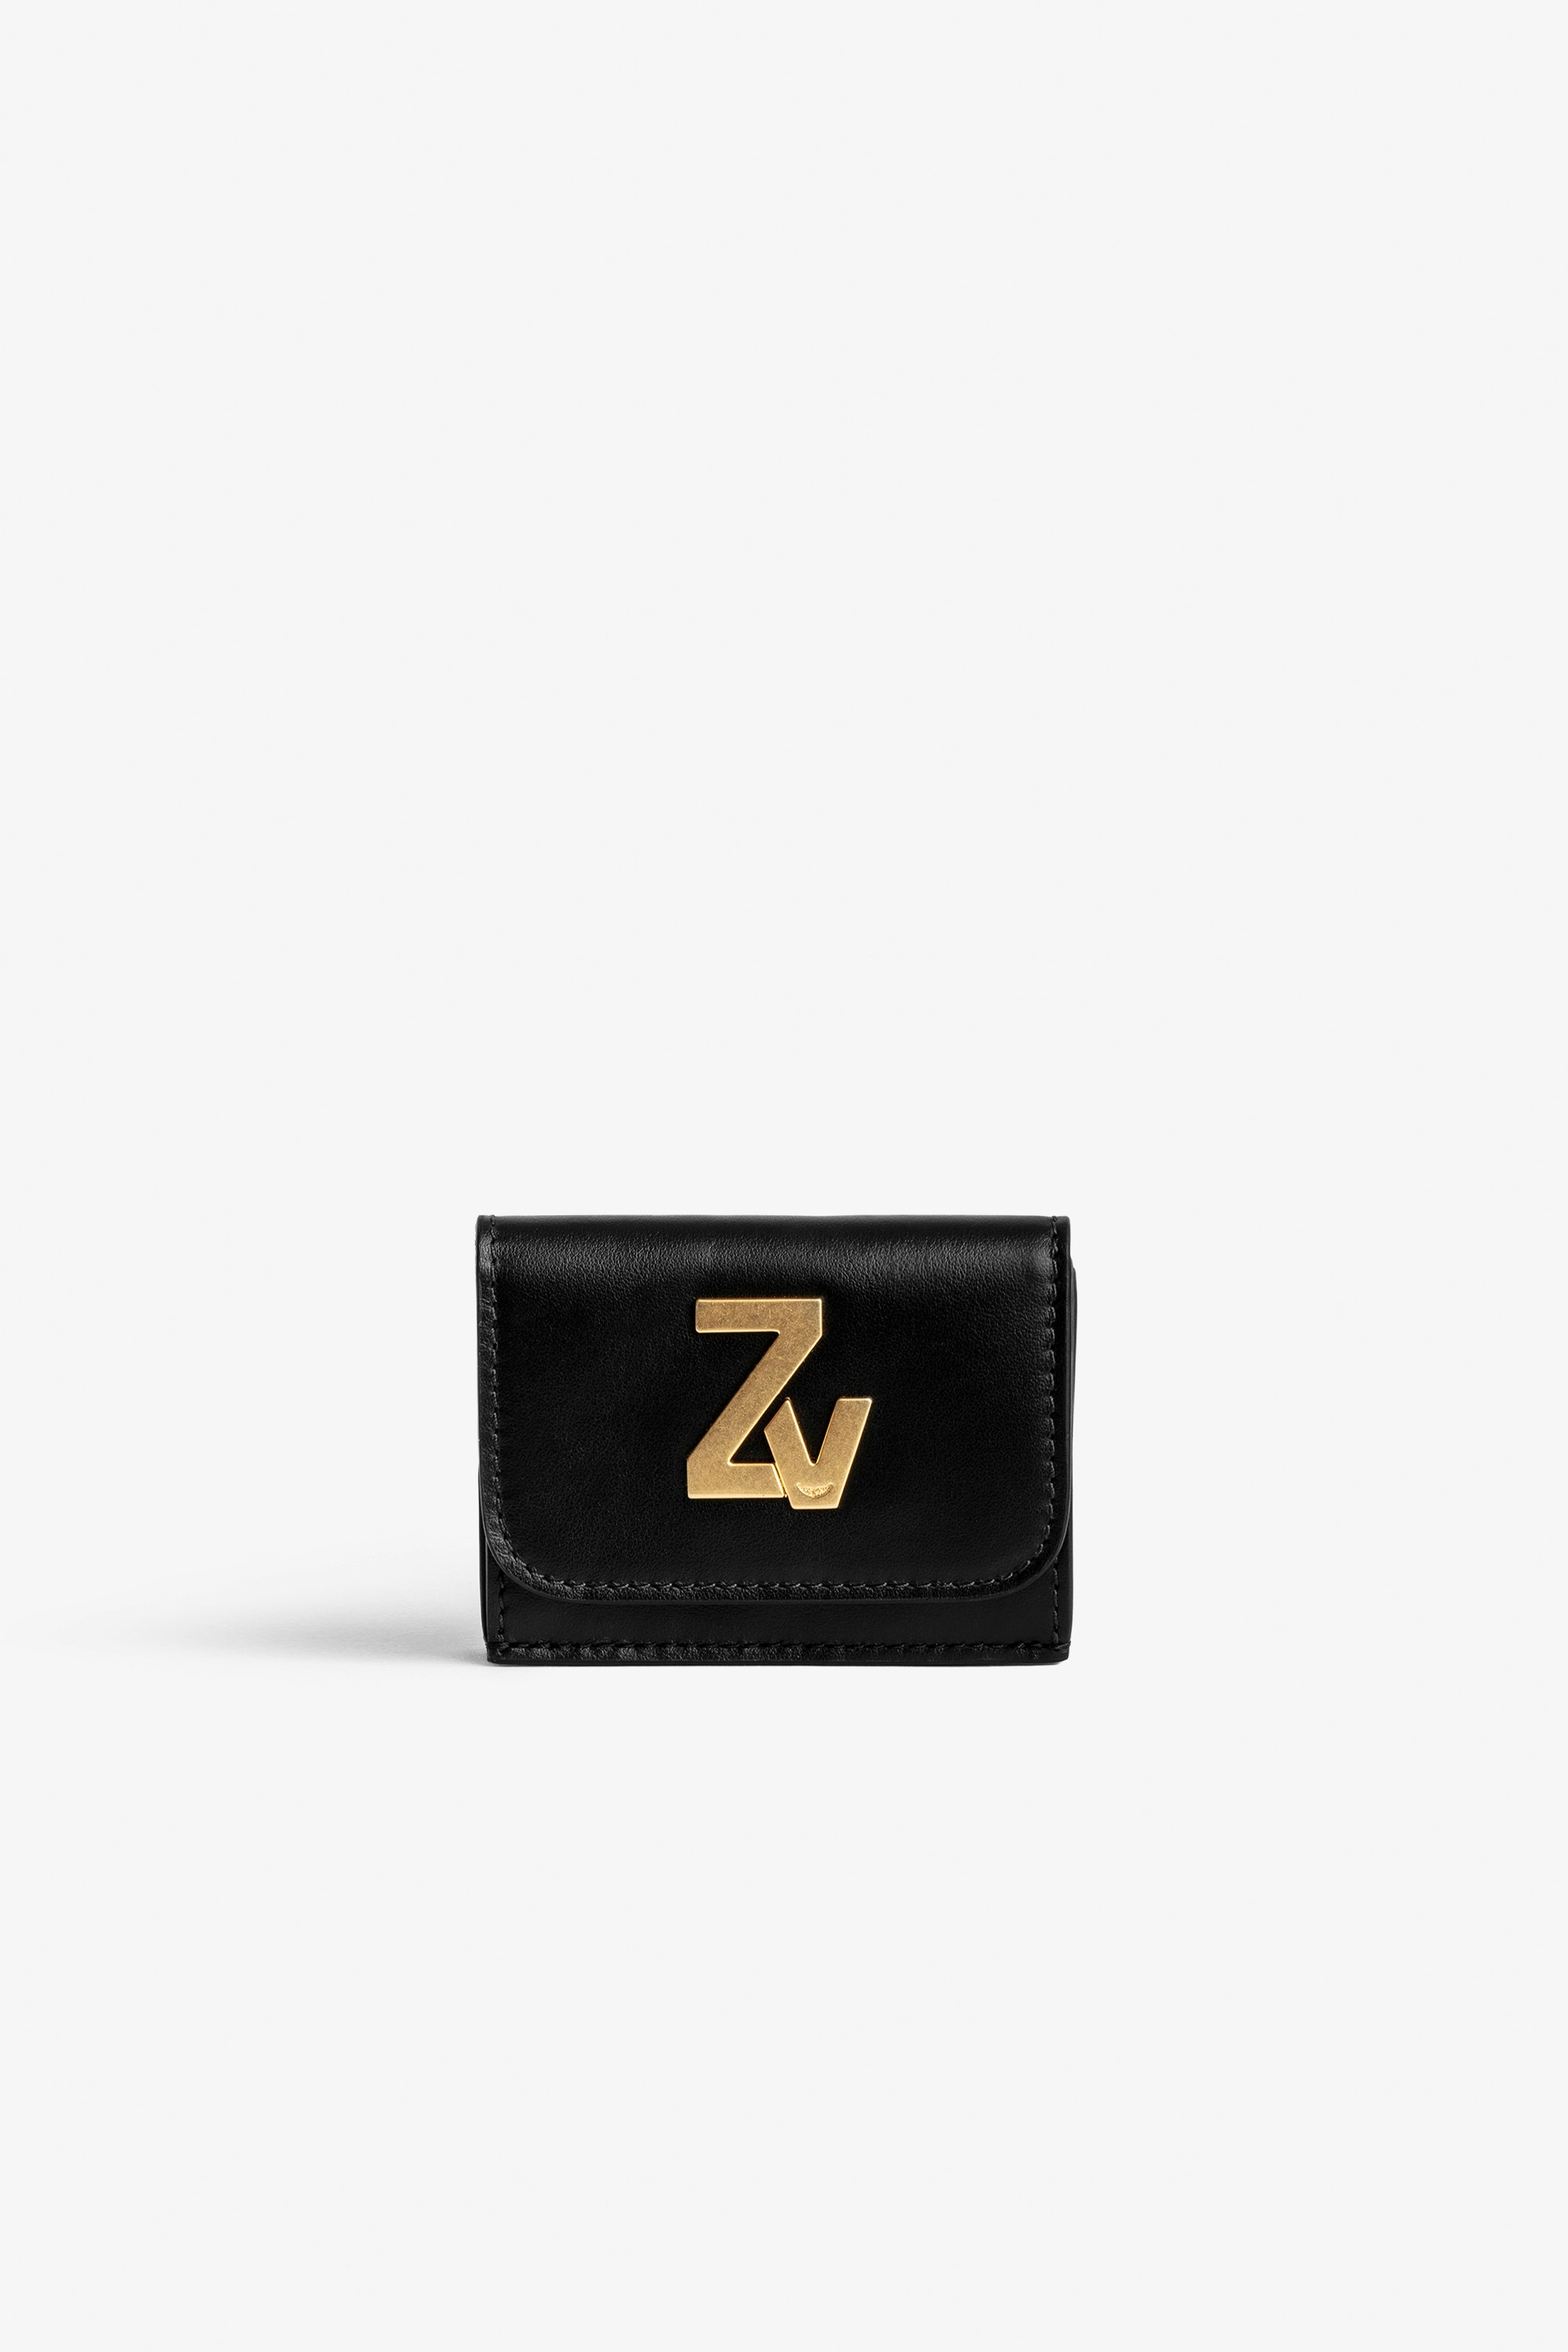 Brieftasche ZV Initiale Le Trifold Kleine Damen Klapp-Brieftasche aus schwarzem Leder